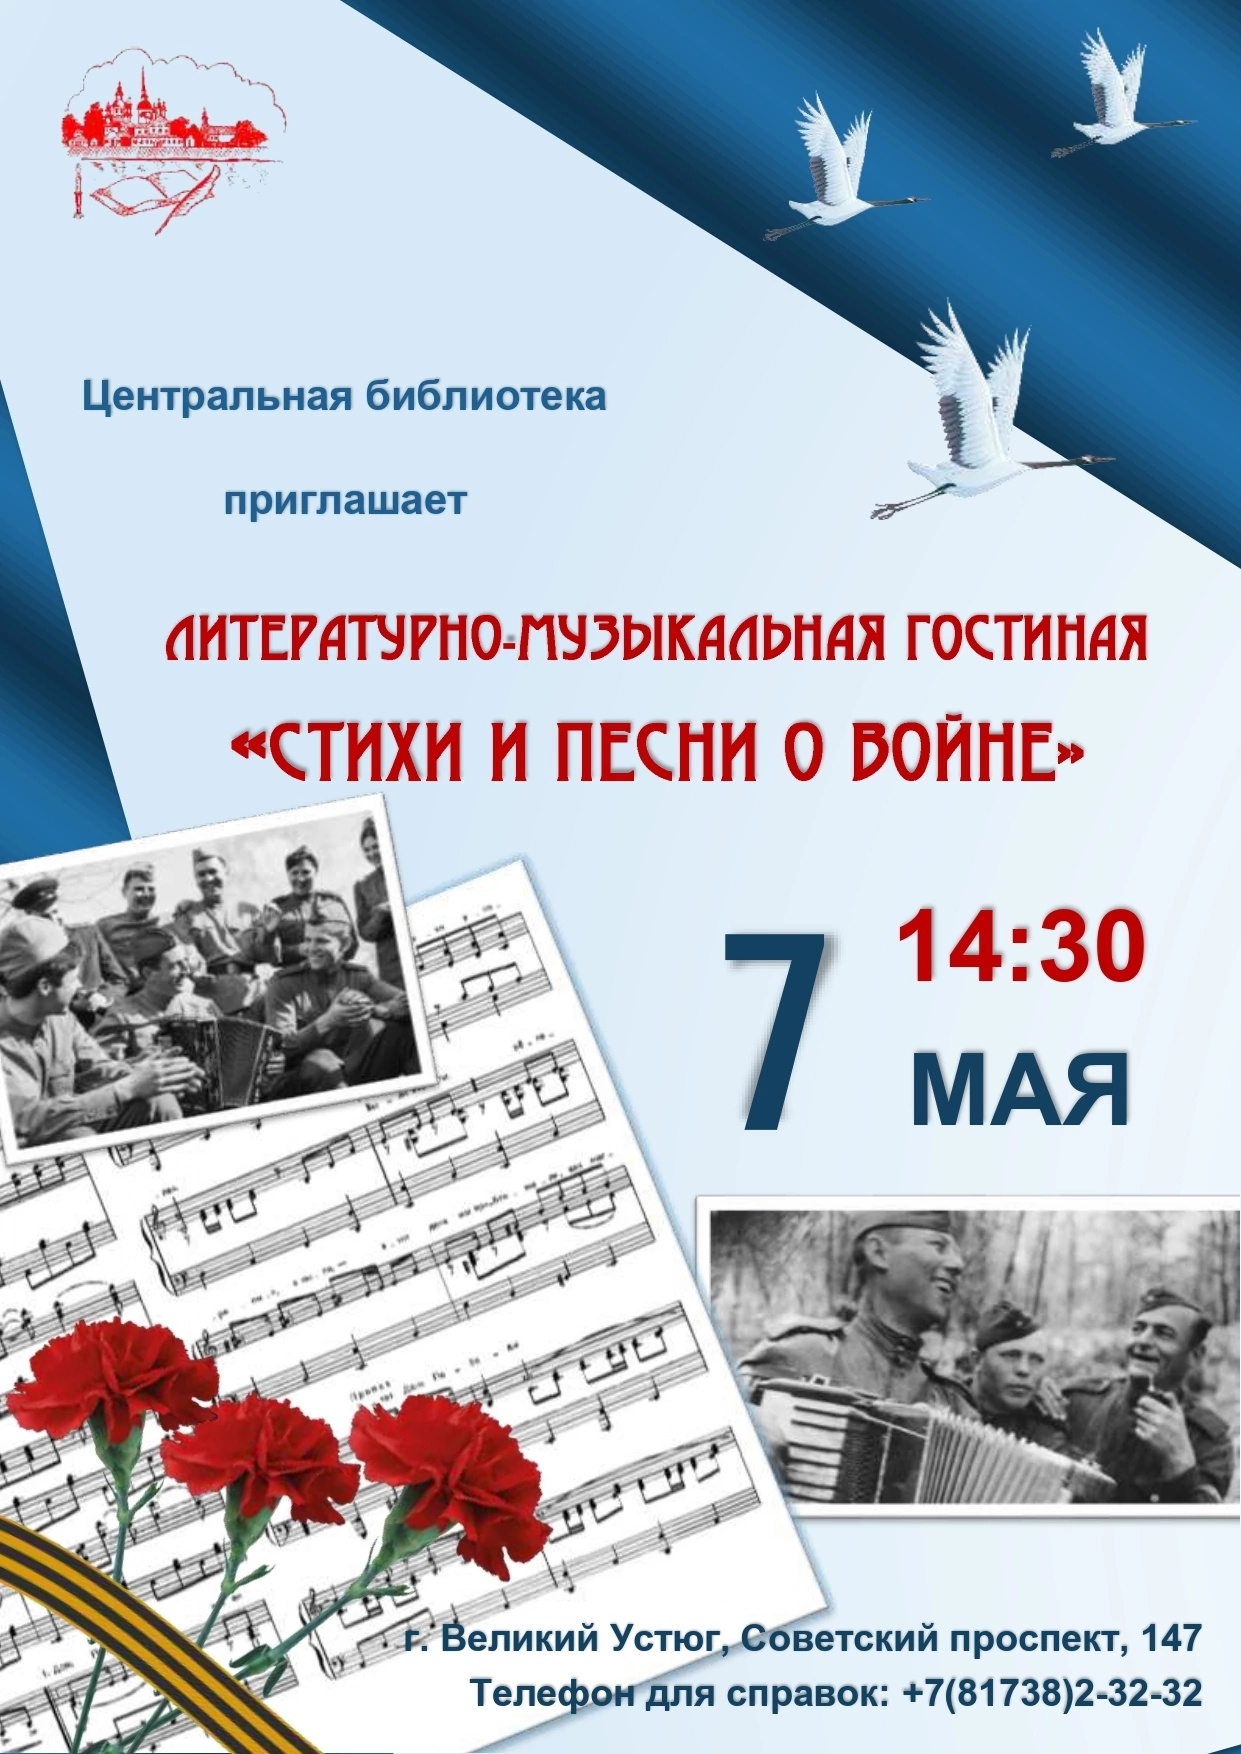 7 мая в 14.30 в литературно-музыкальной гостиной БИБЛИОцентра Деда Мороза прозвучат стихи и песни о войне.